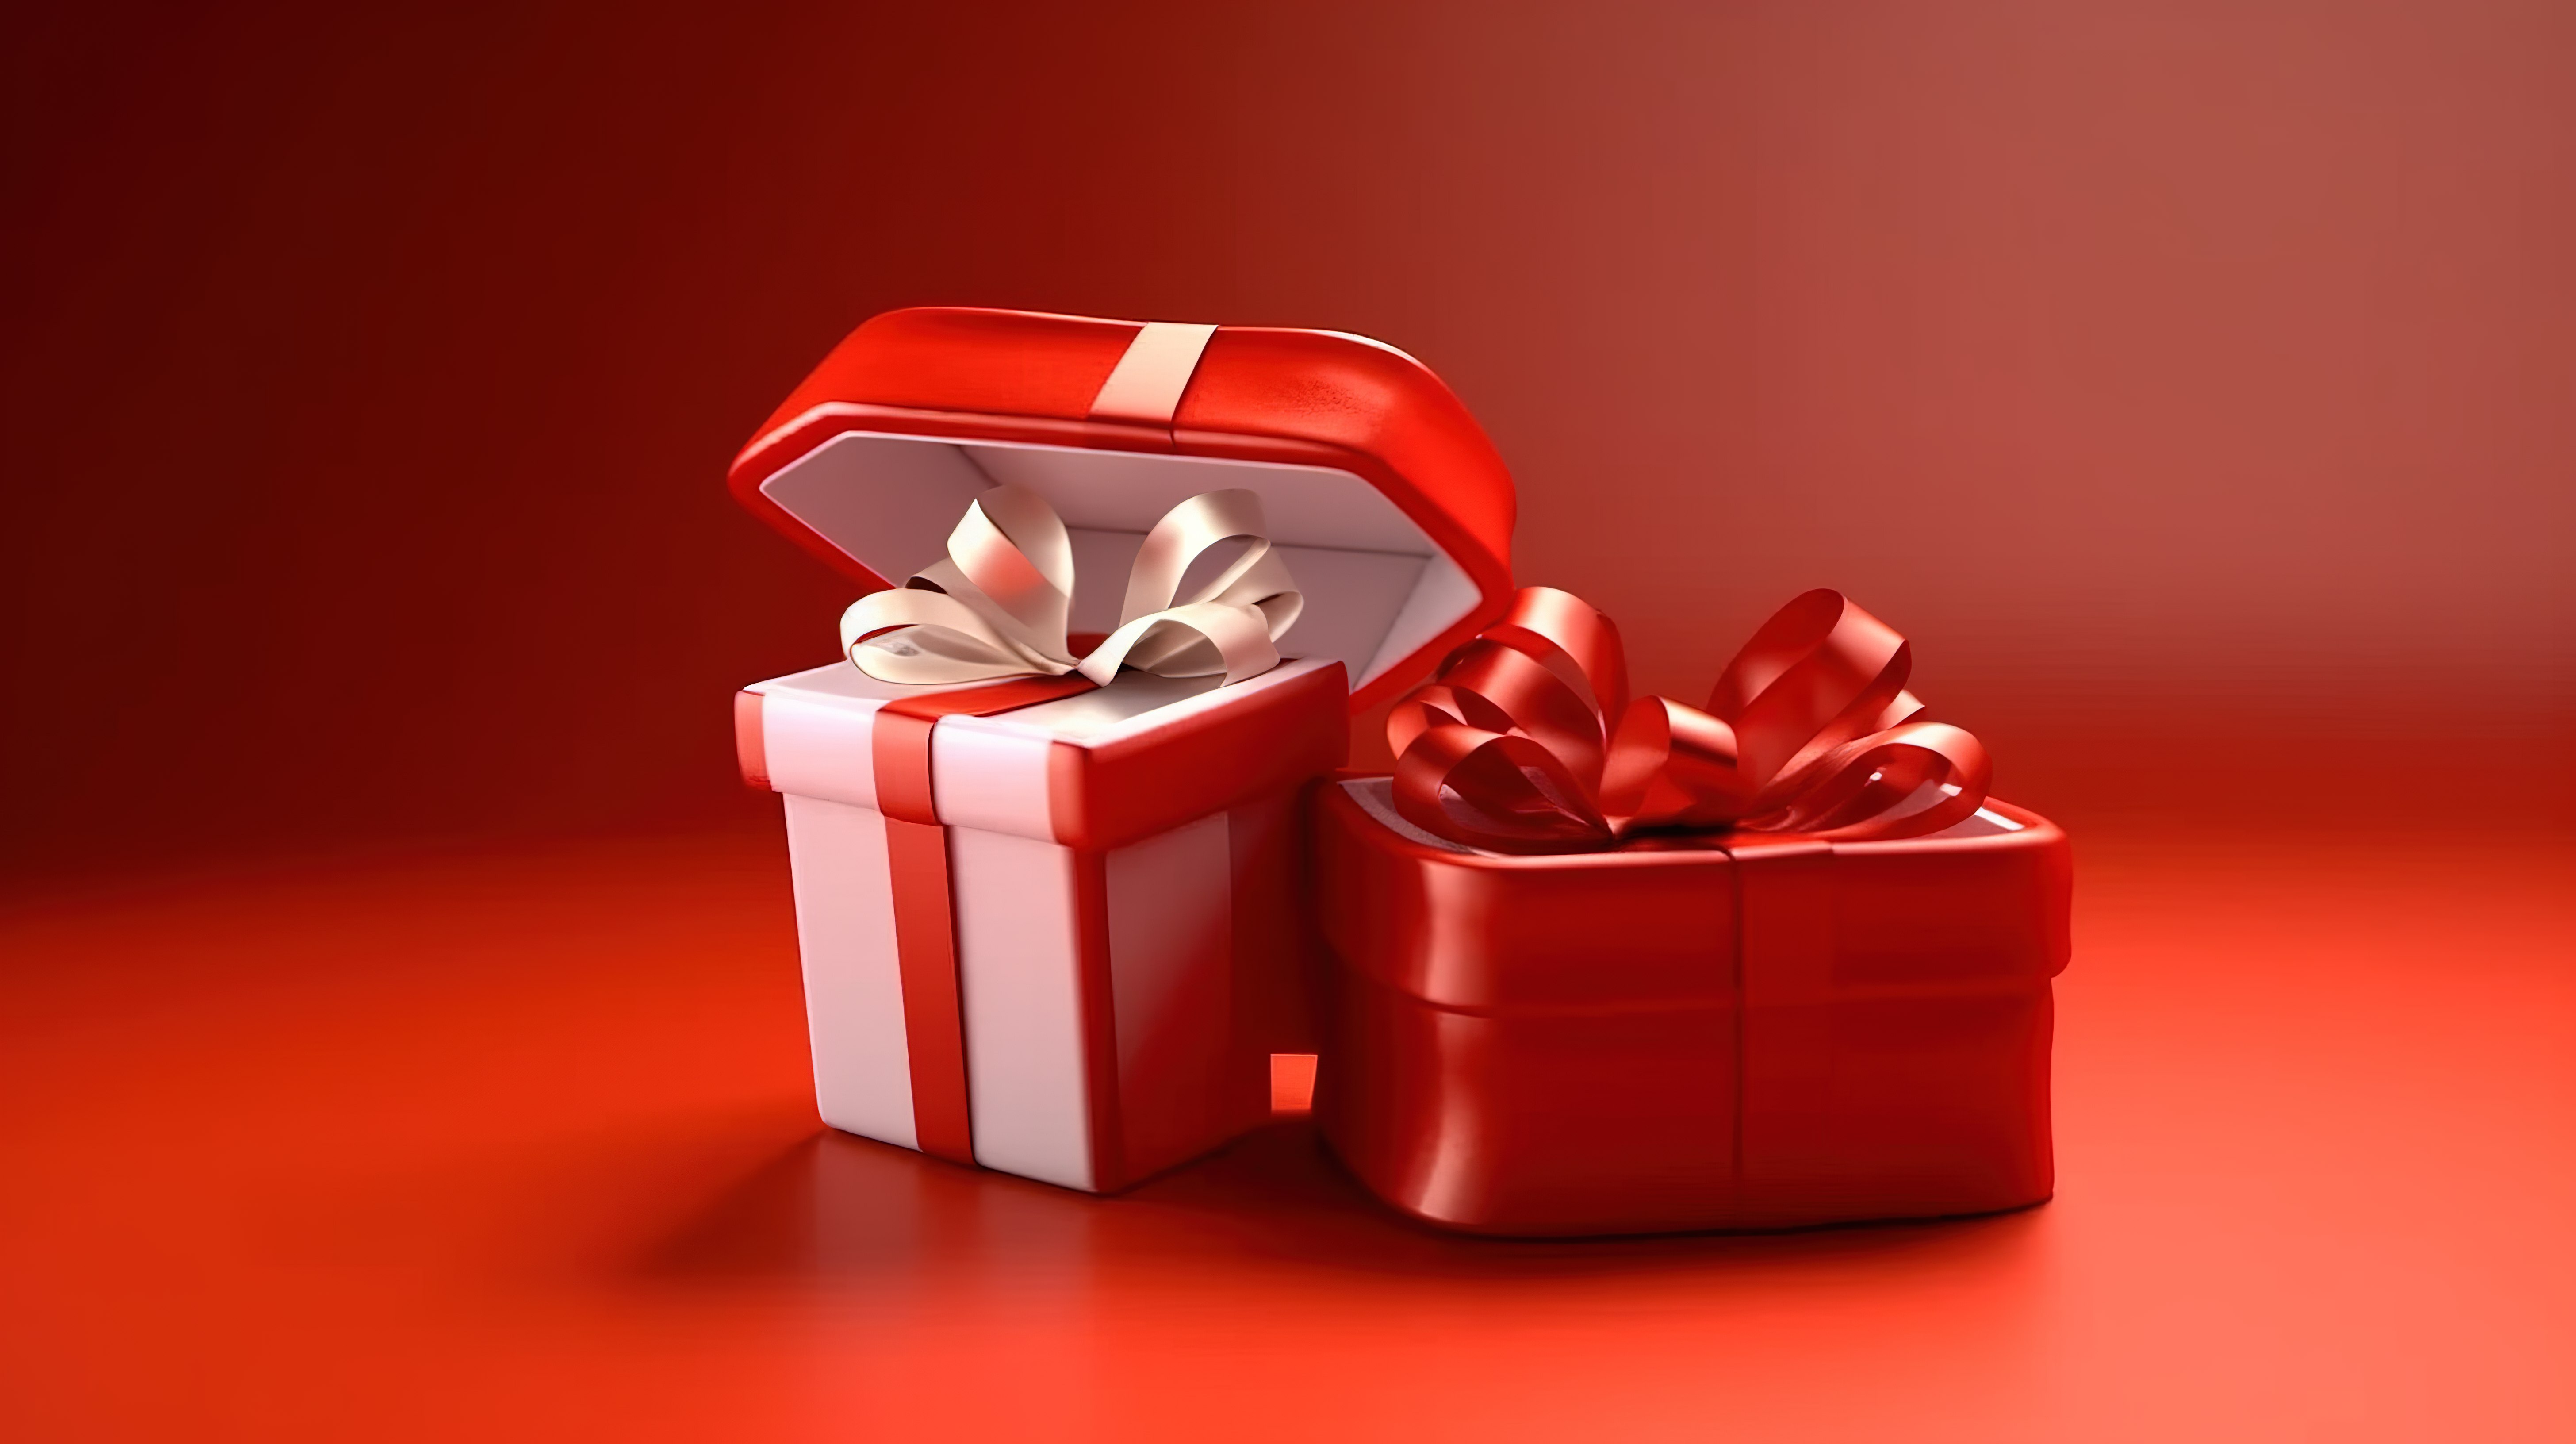 3D 渲染推出了一个节日装饰的礼品盒，配有丝带，用于庆祝周年纪念日生日圣诞节和新年图片